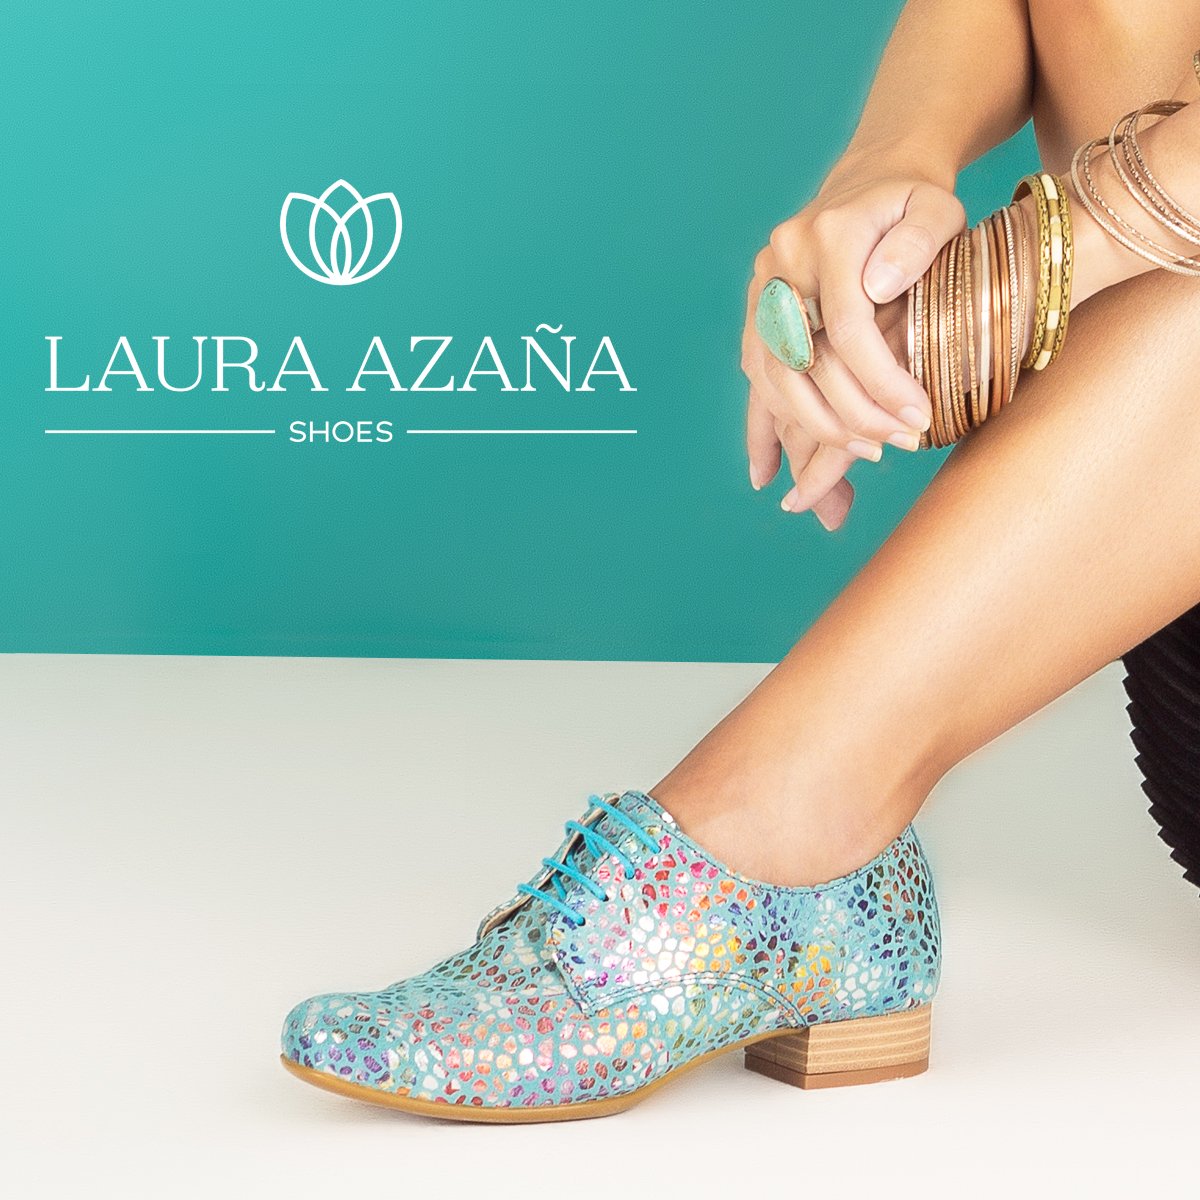 Laura Azaña on Twitter: "Si hay algo que nos gusta del verano... ¡son los zapatos! Visita nuestra online y uno de nuestros últimos modelos de la temporada. Calzado confortable, elegante,